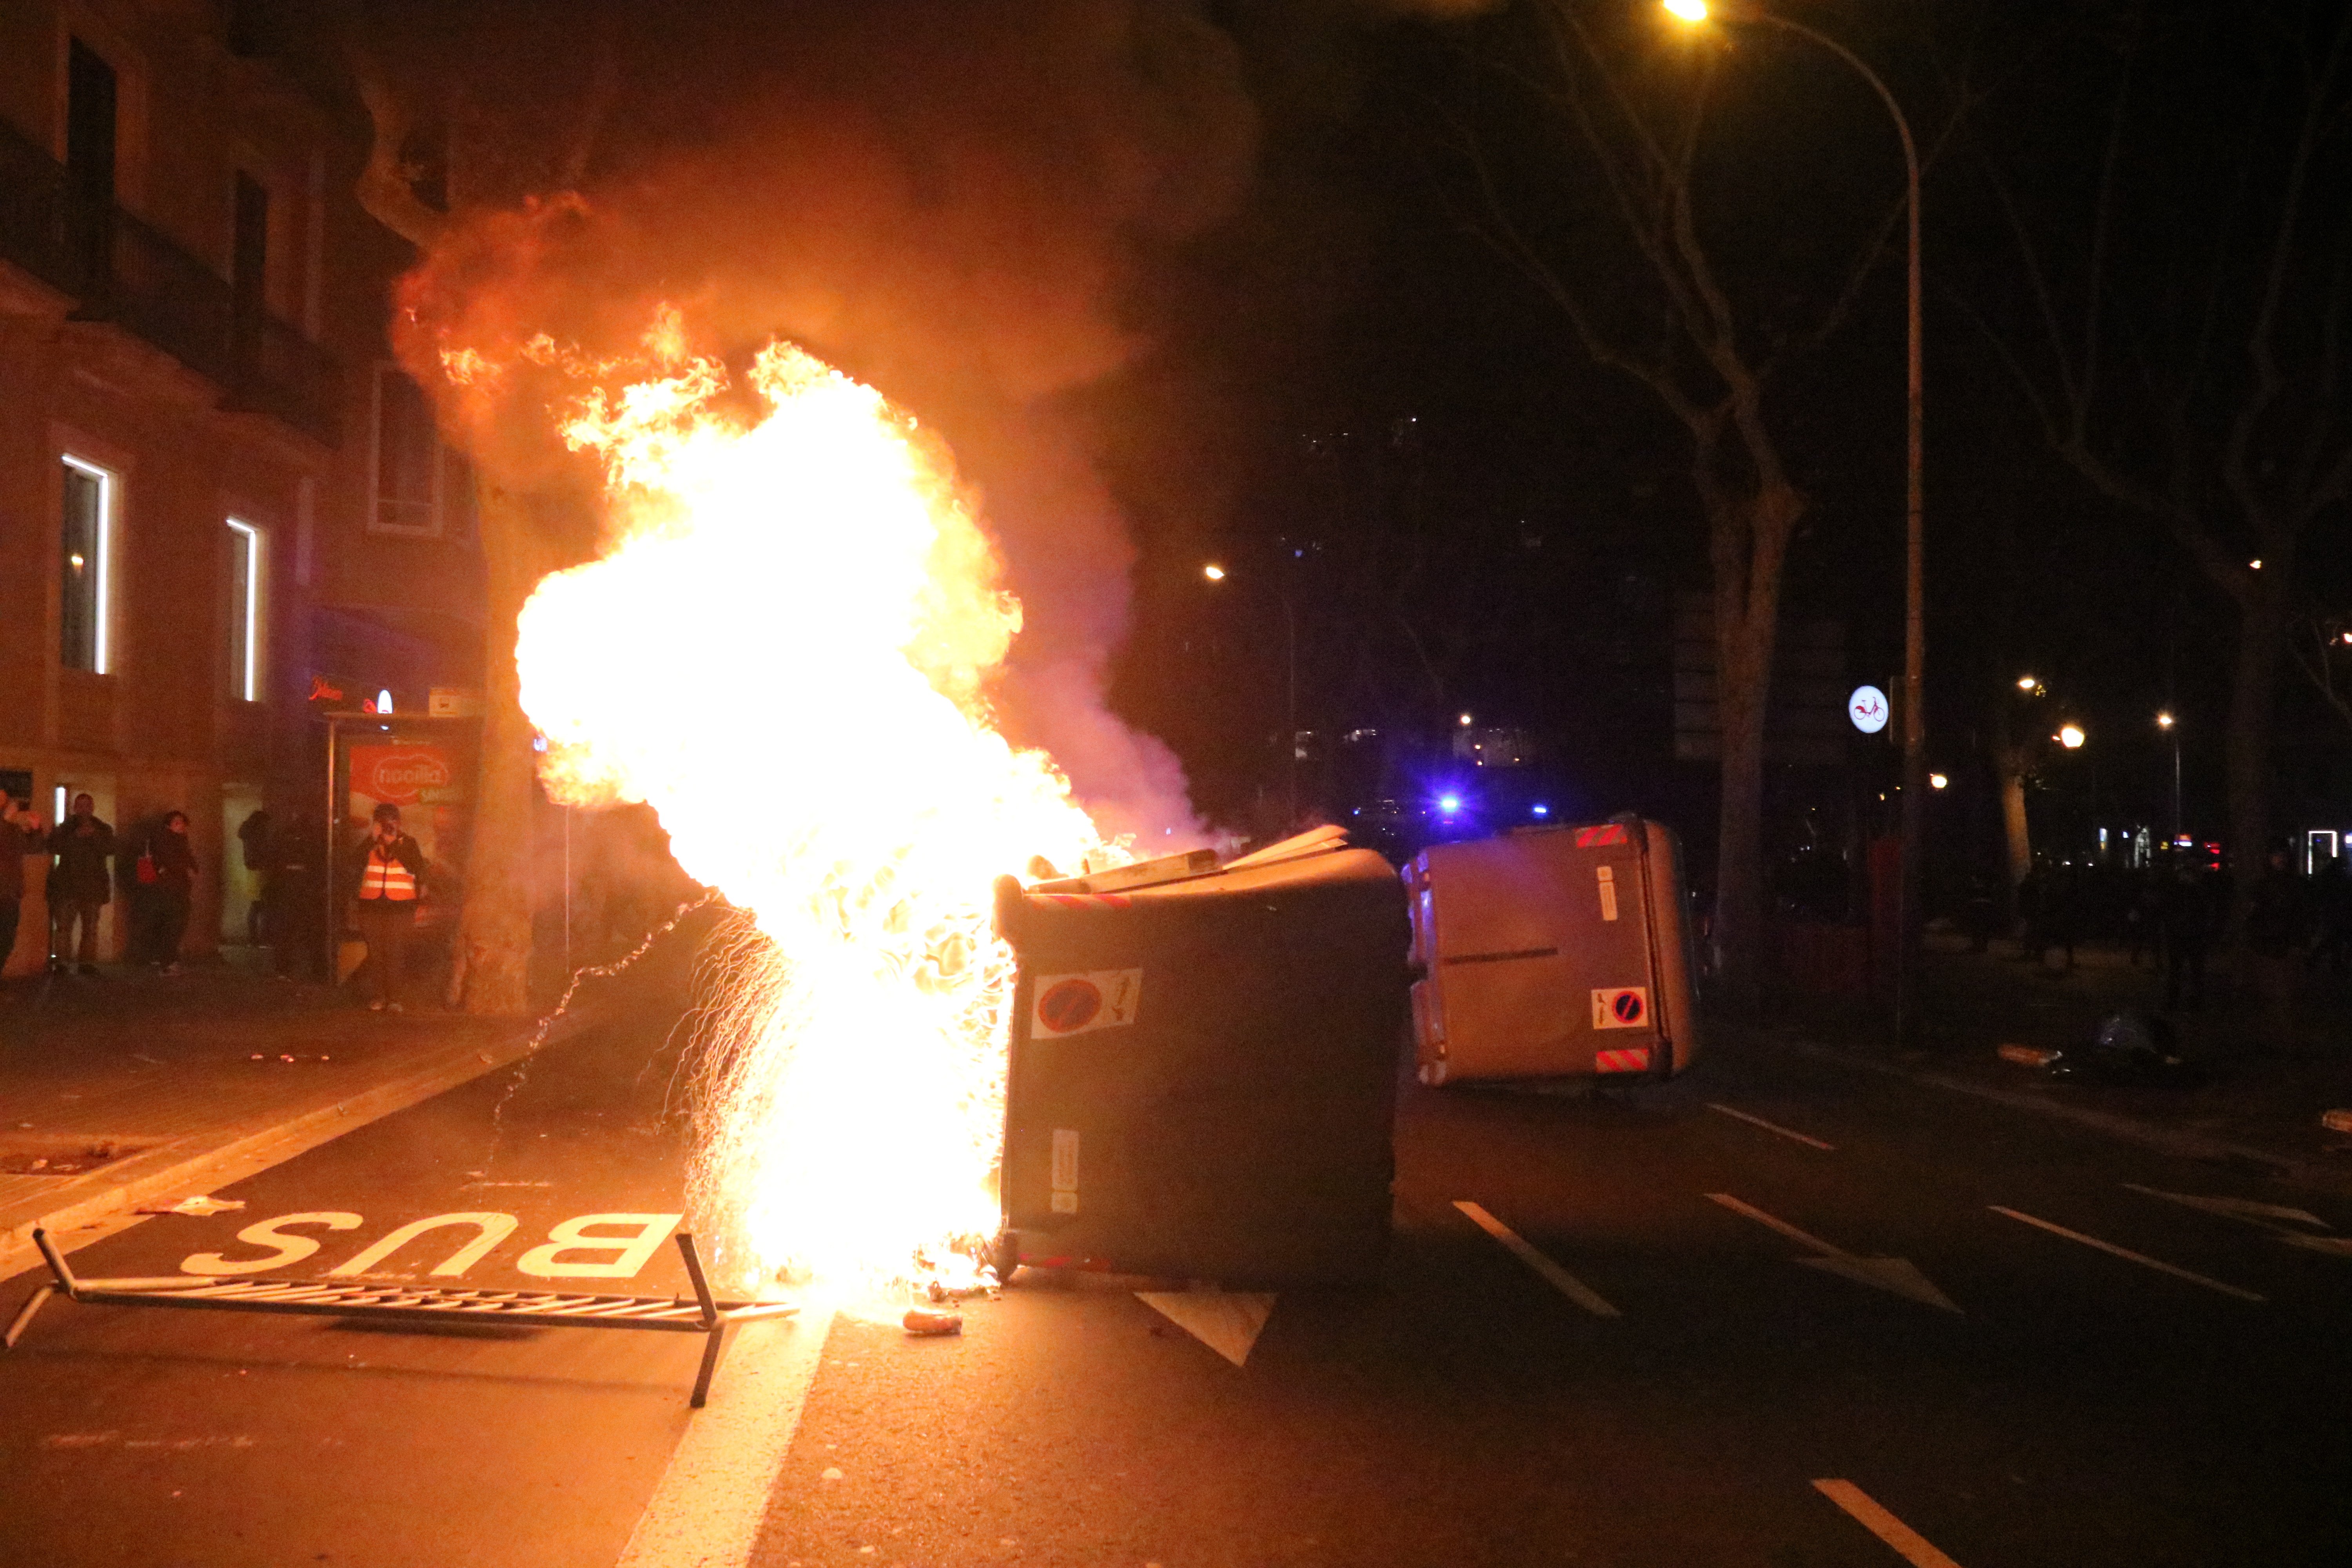 Cremen contenidors en resposta a la retirada de l'escó a Torra